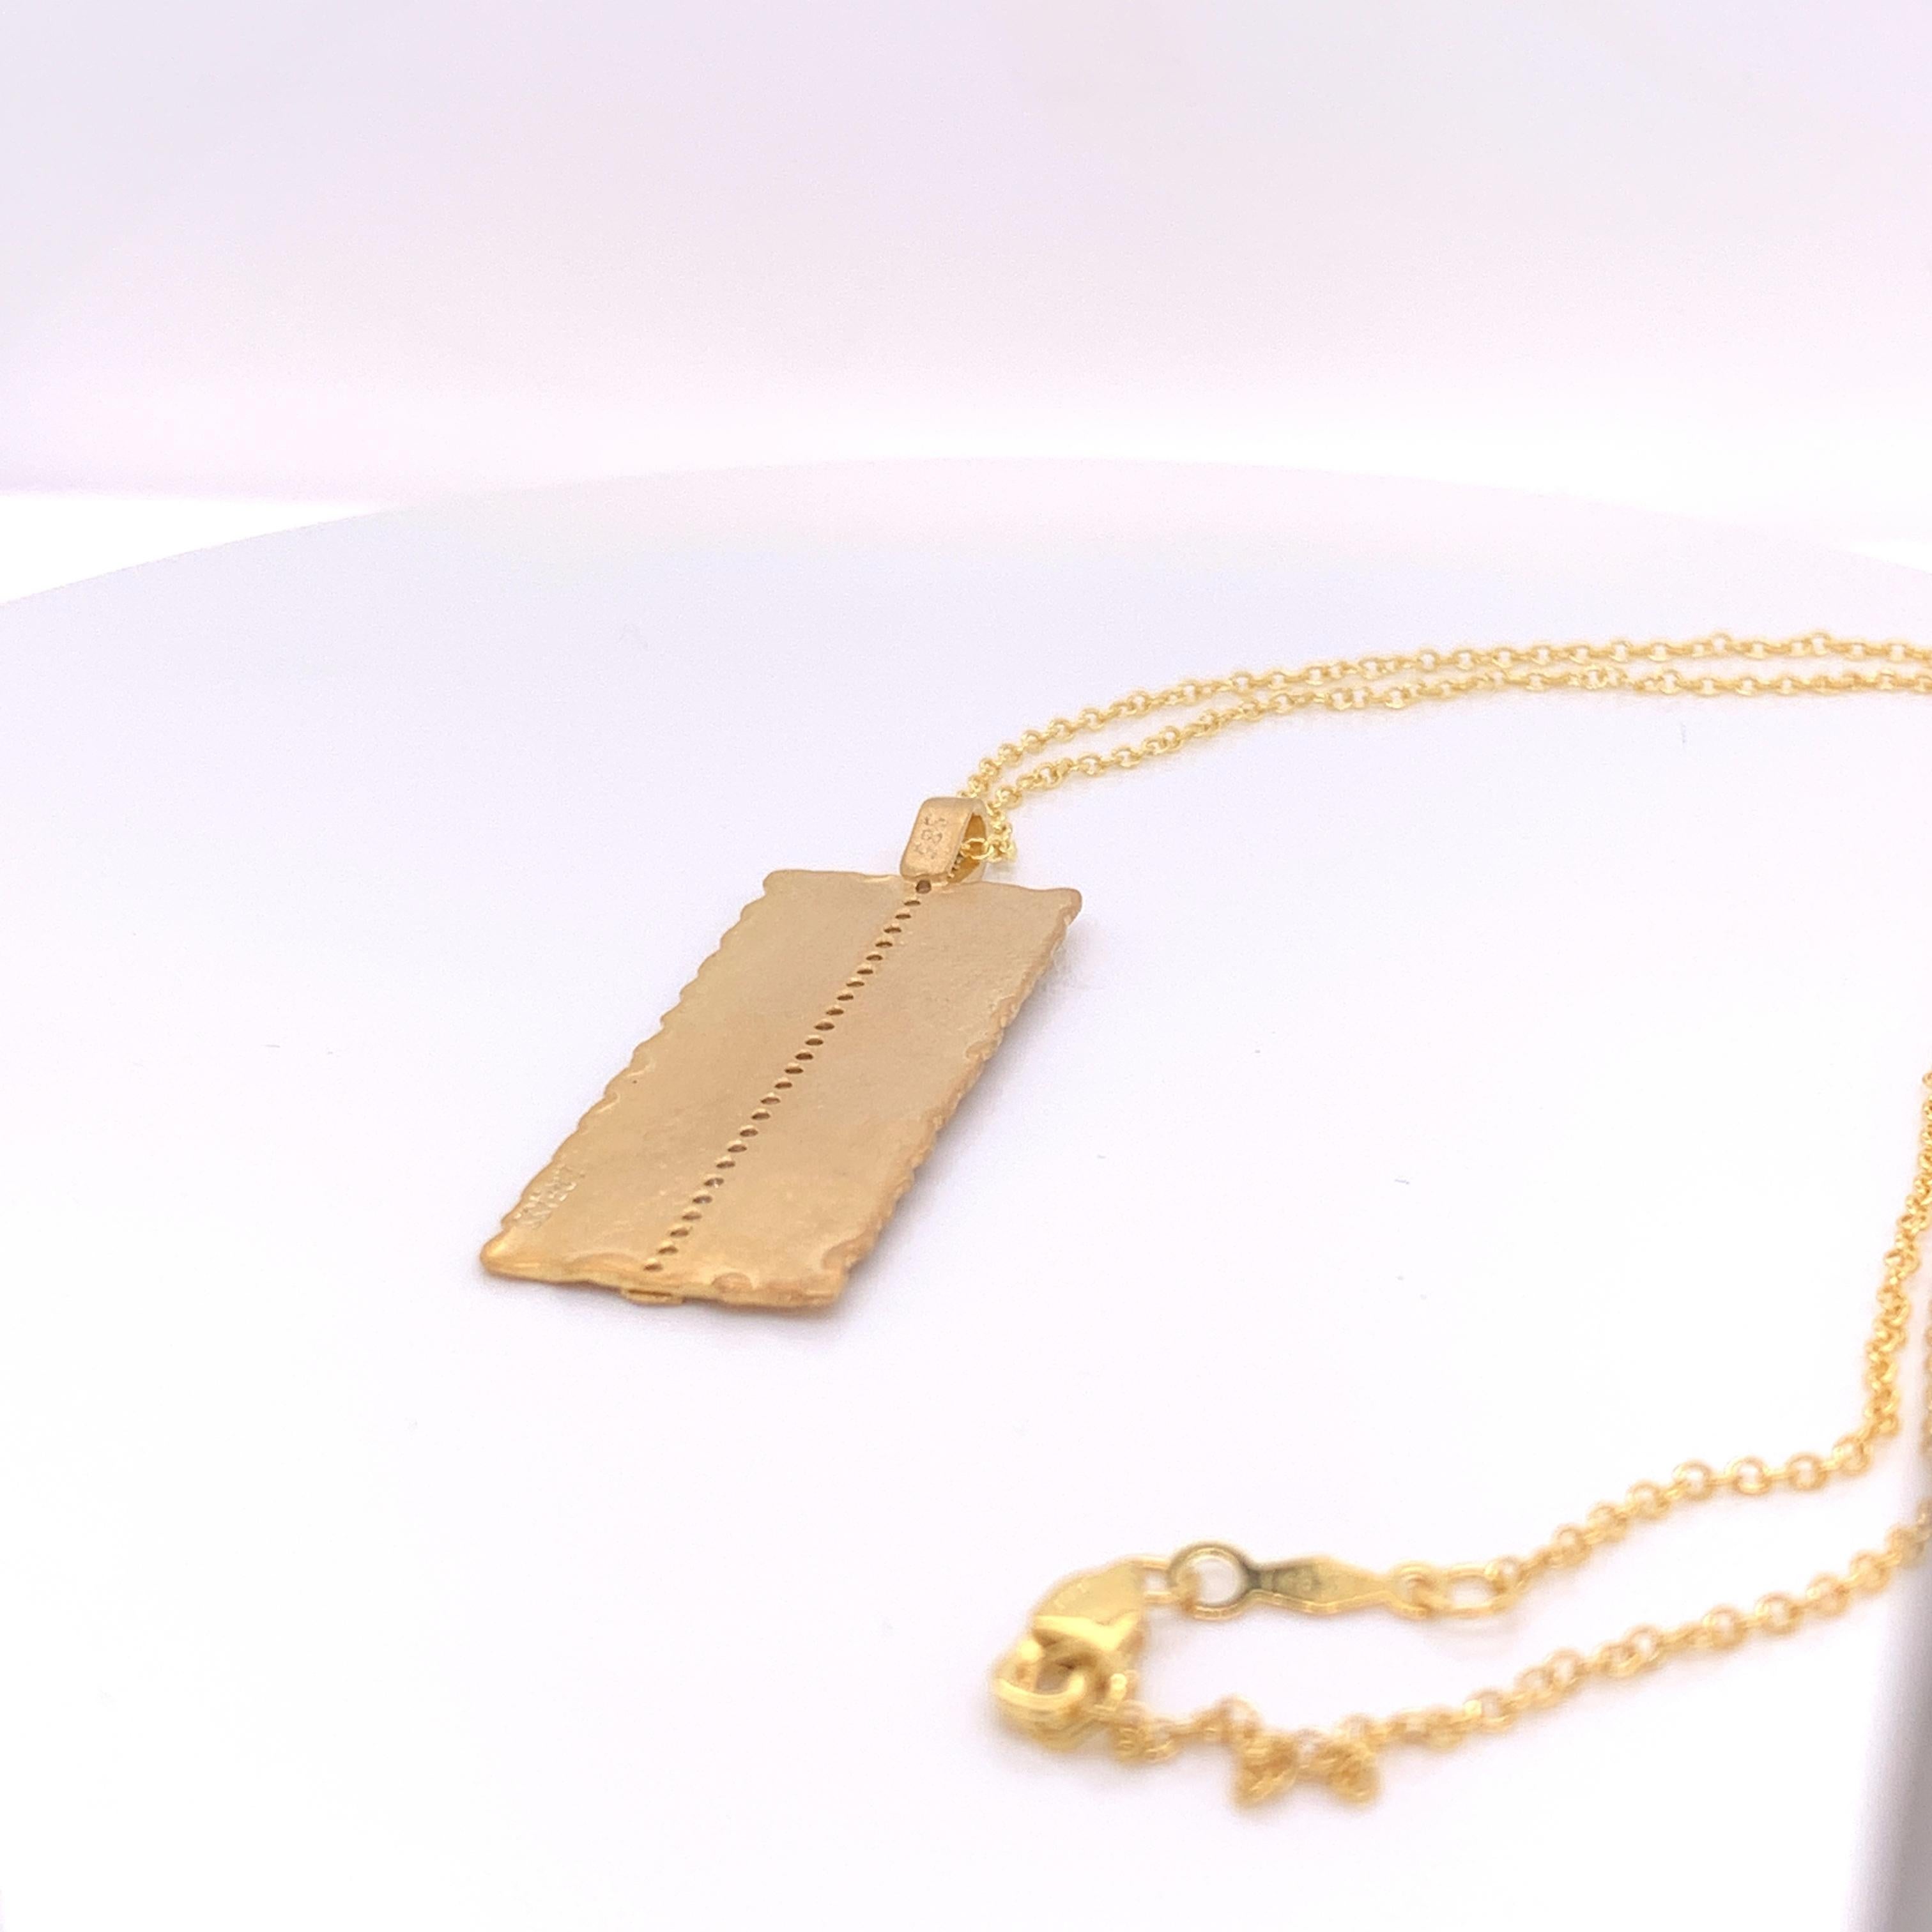 rectangle shape pendant necklace